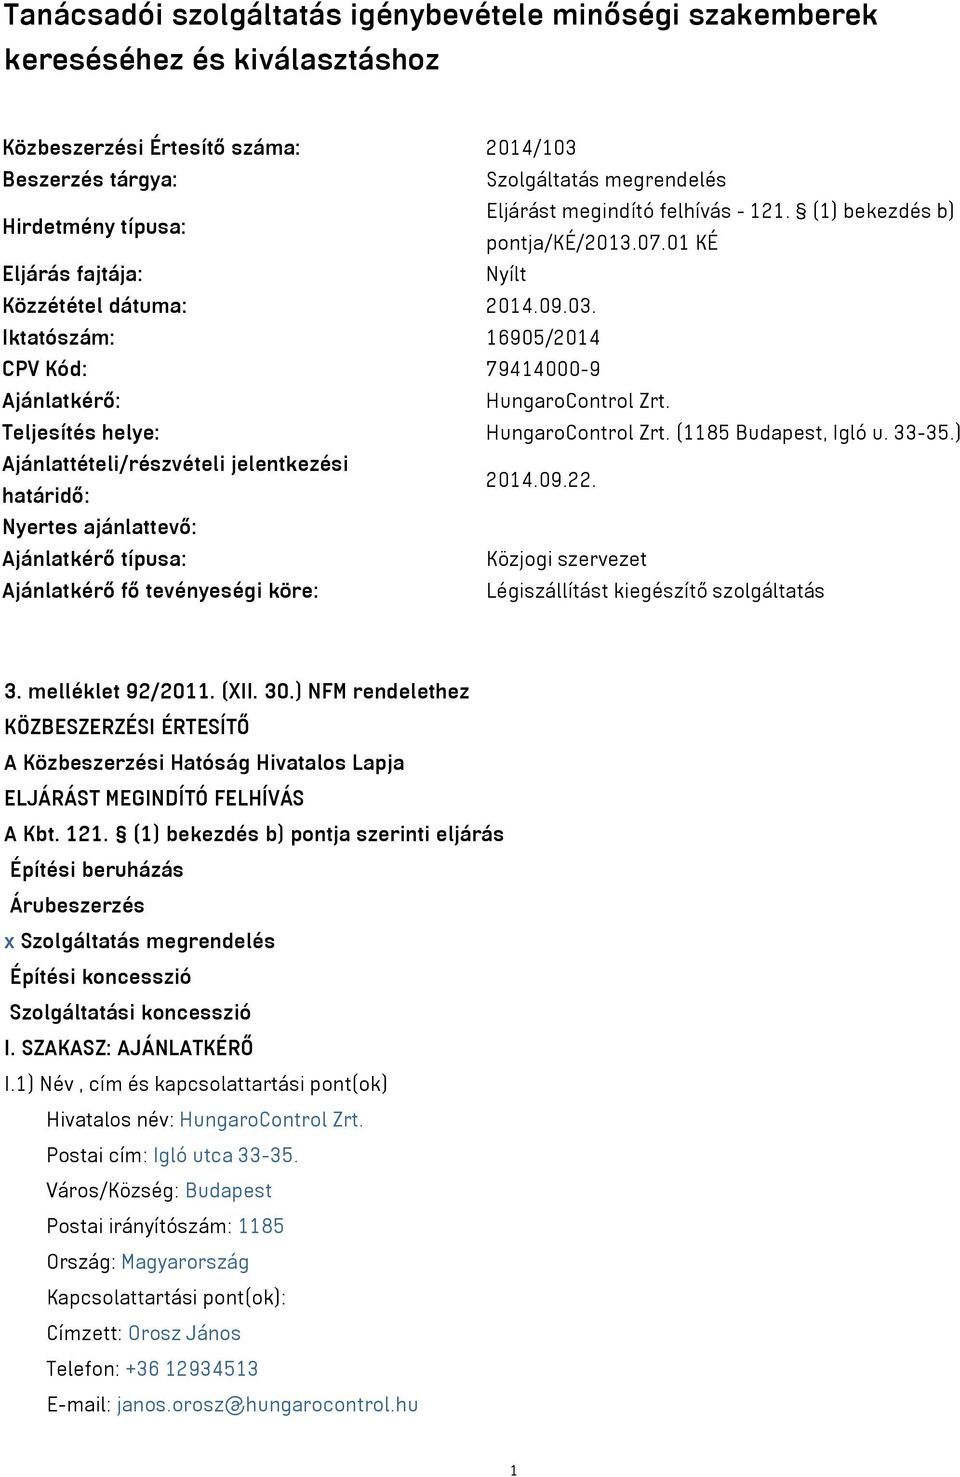 Teljesítés helye: HungaroControl Zrt. (1185 Budapest, Igló u. 33-35.) Ajánlattételi/részvételi jelentkezési határidő: 2014.09.22.